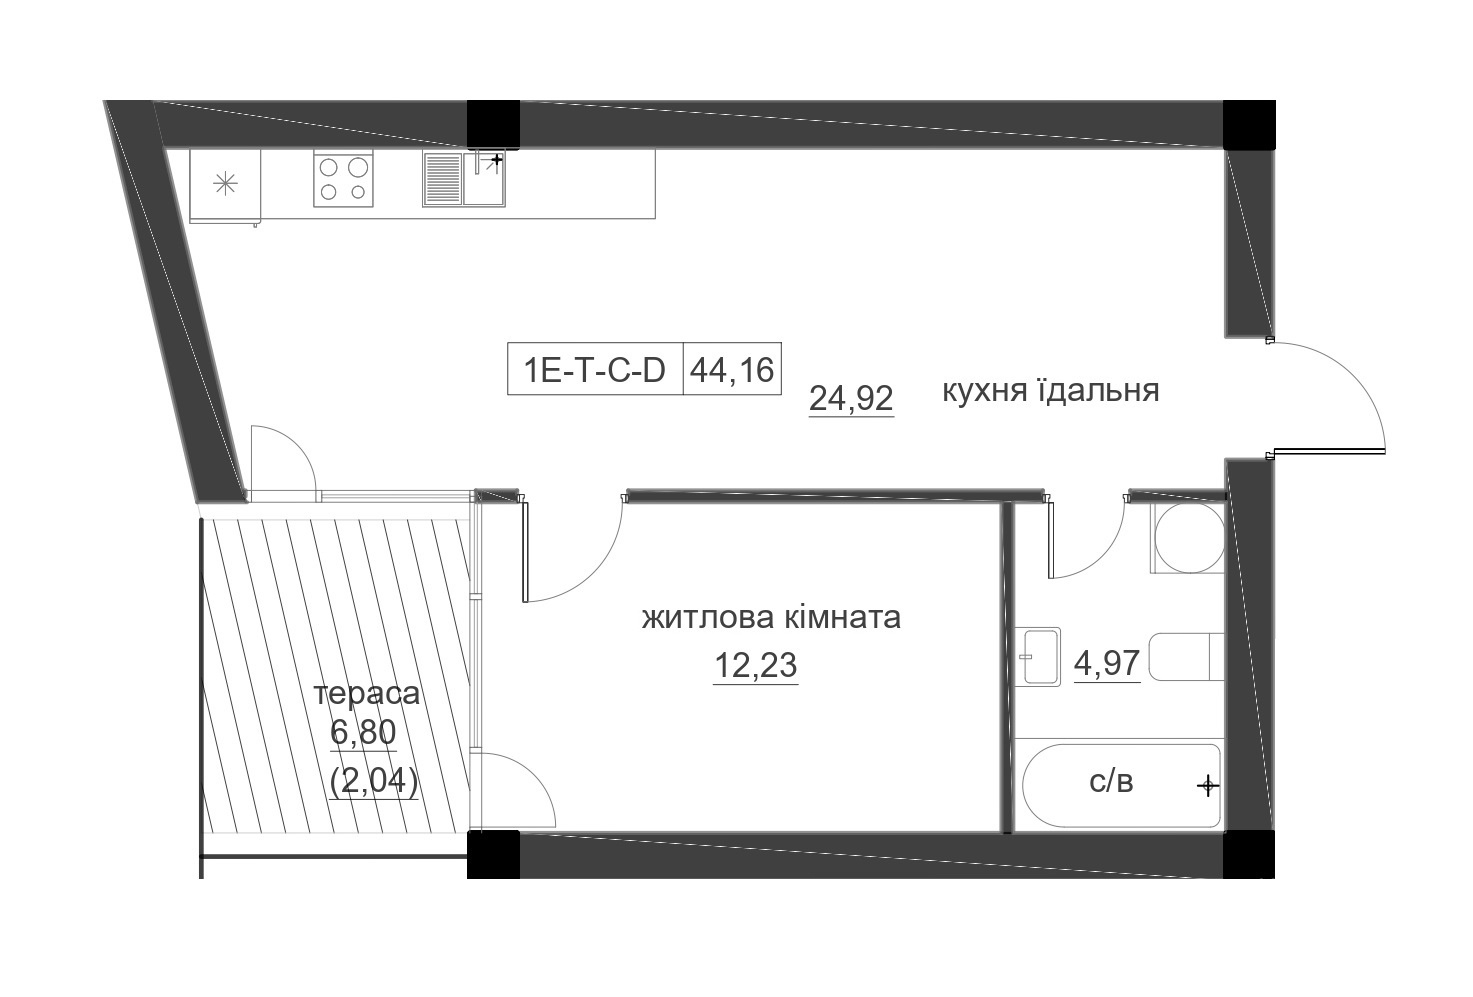 Планировка 1-к квартира площей 44.16м2, LR-005-01/0001.